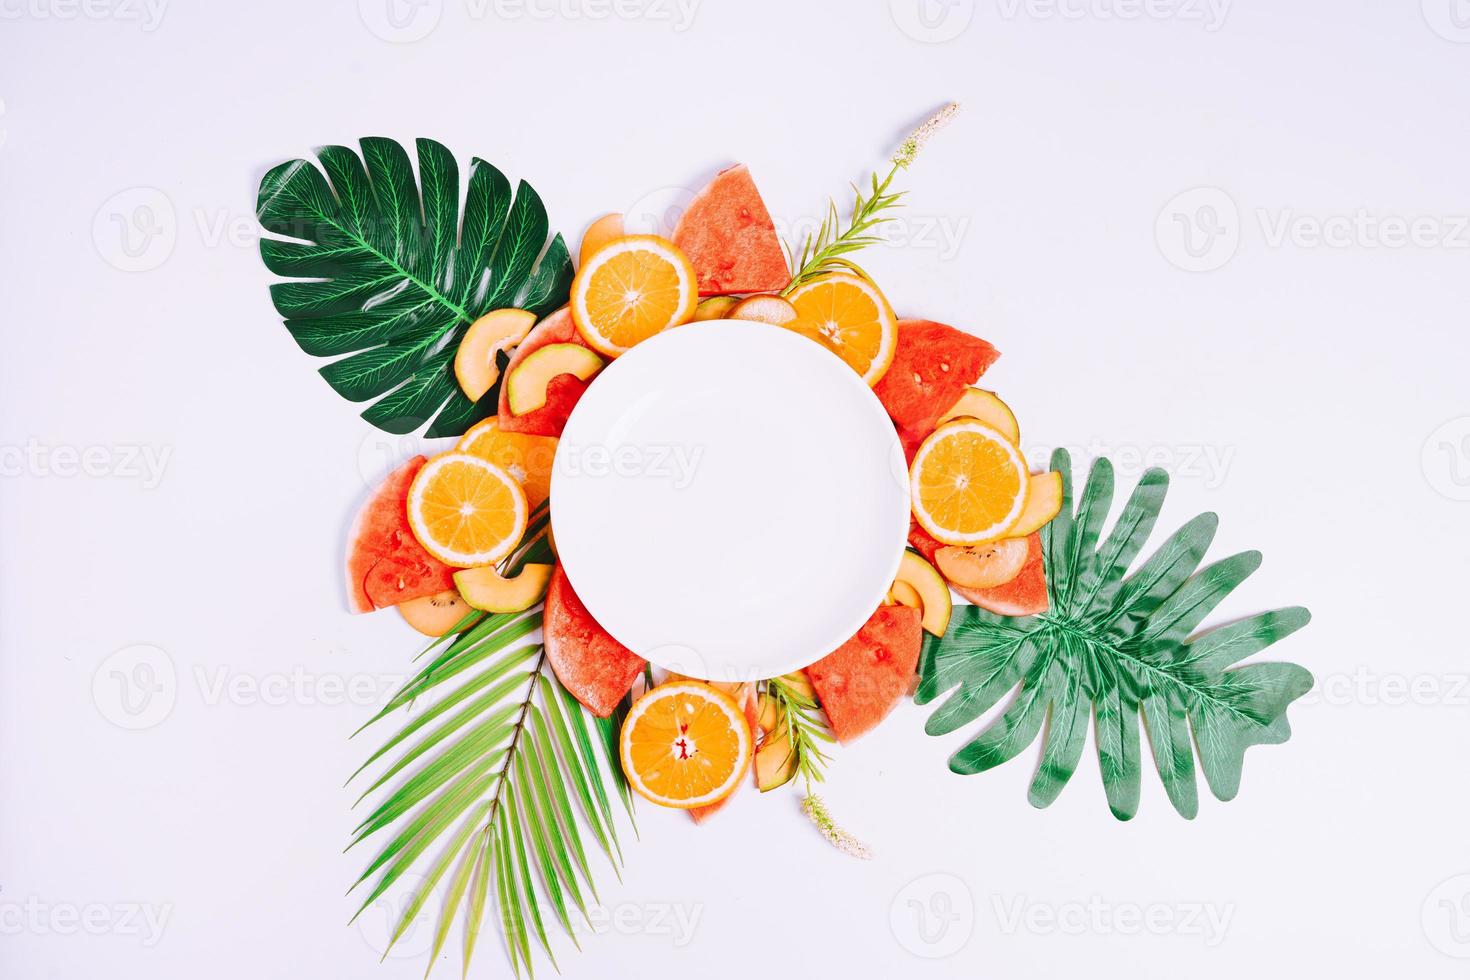 el plato vacío se coloca sobre trozos de fruta tropical foto